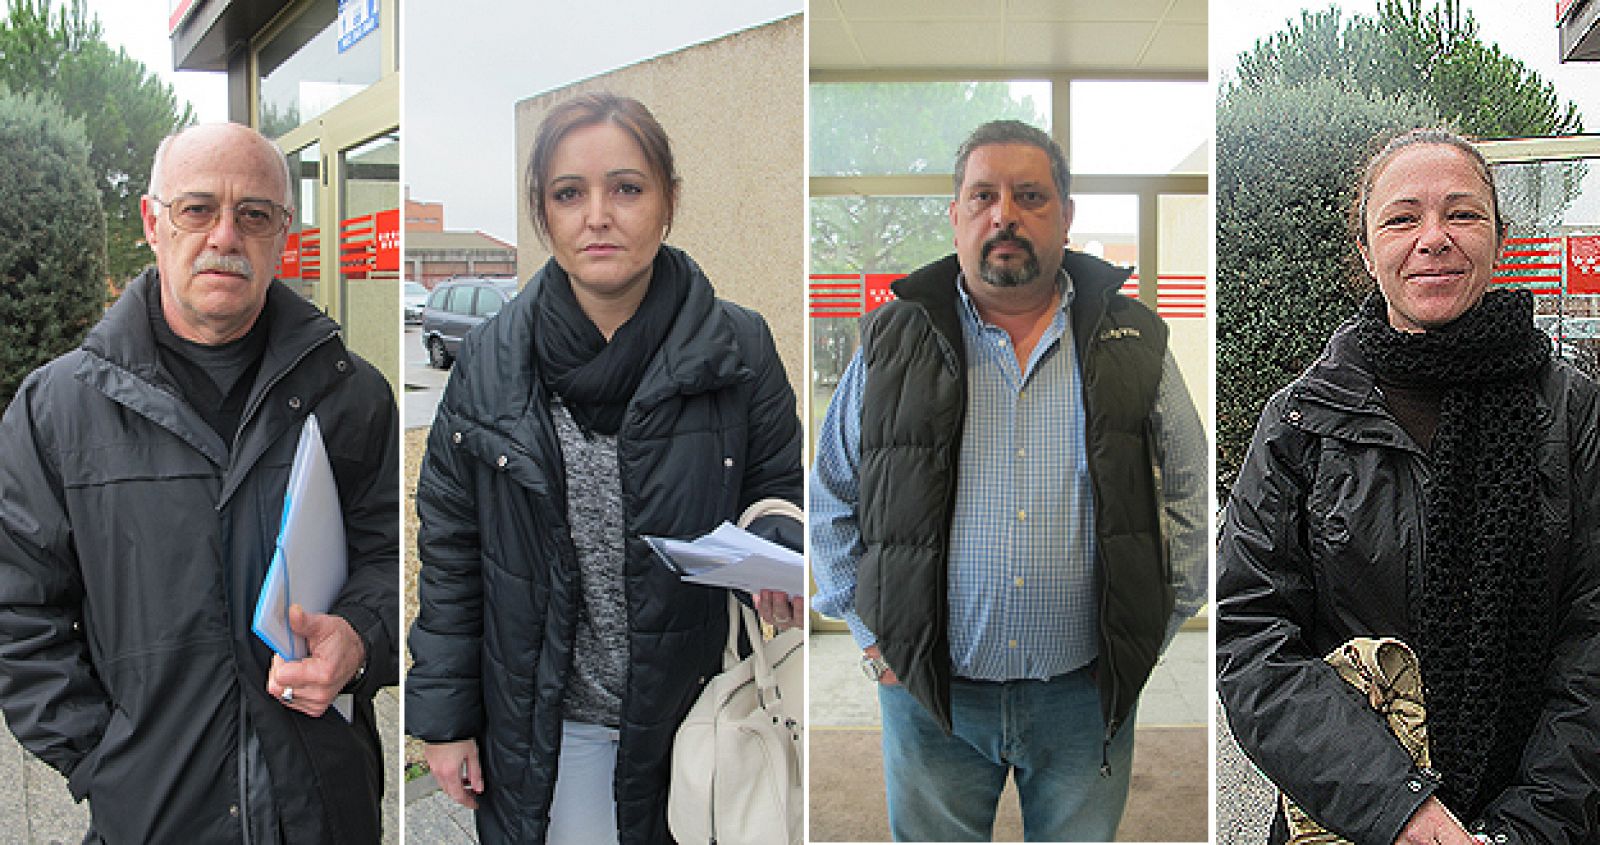 Agustín, Emilia, Juan Luis y Susana son algunos de los rostros del paro en nuestro país